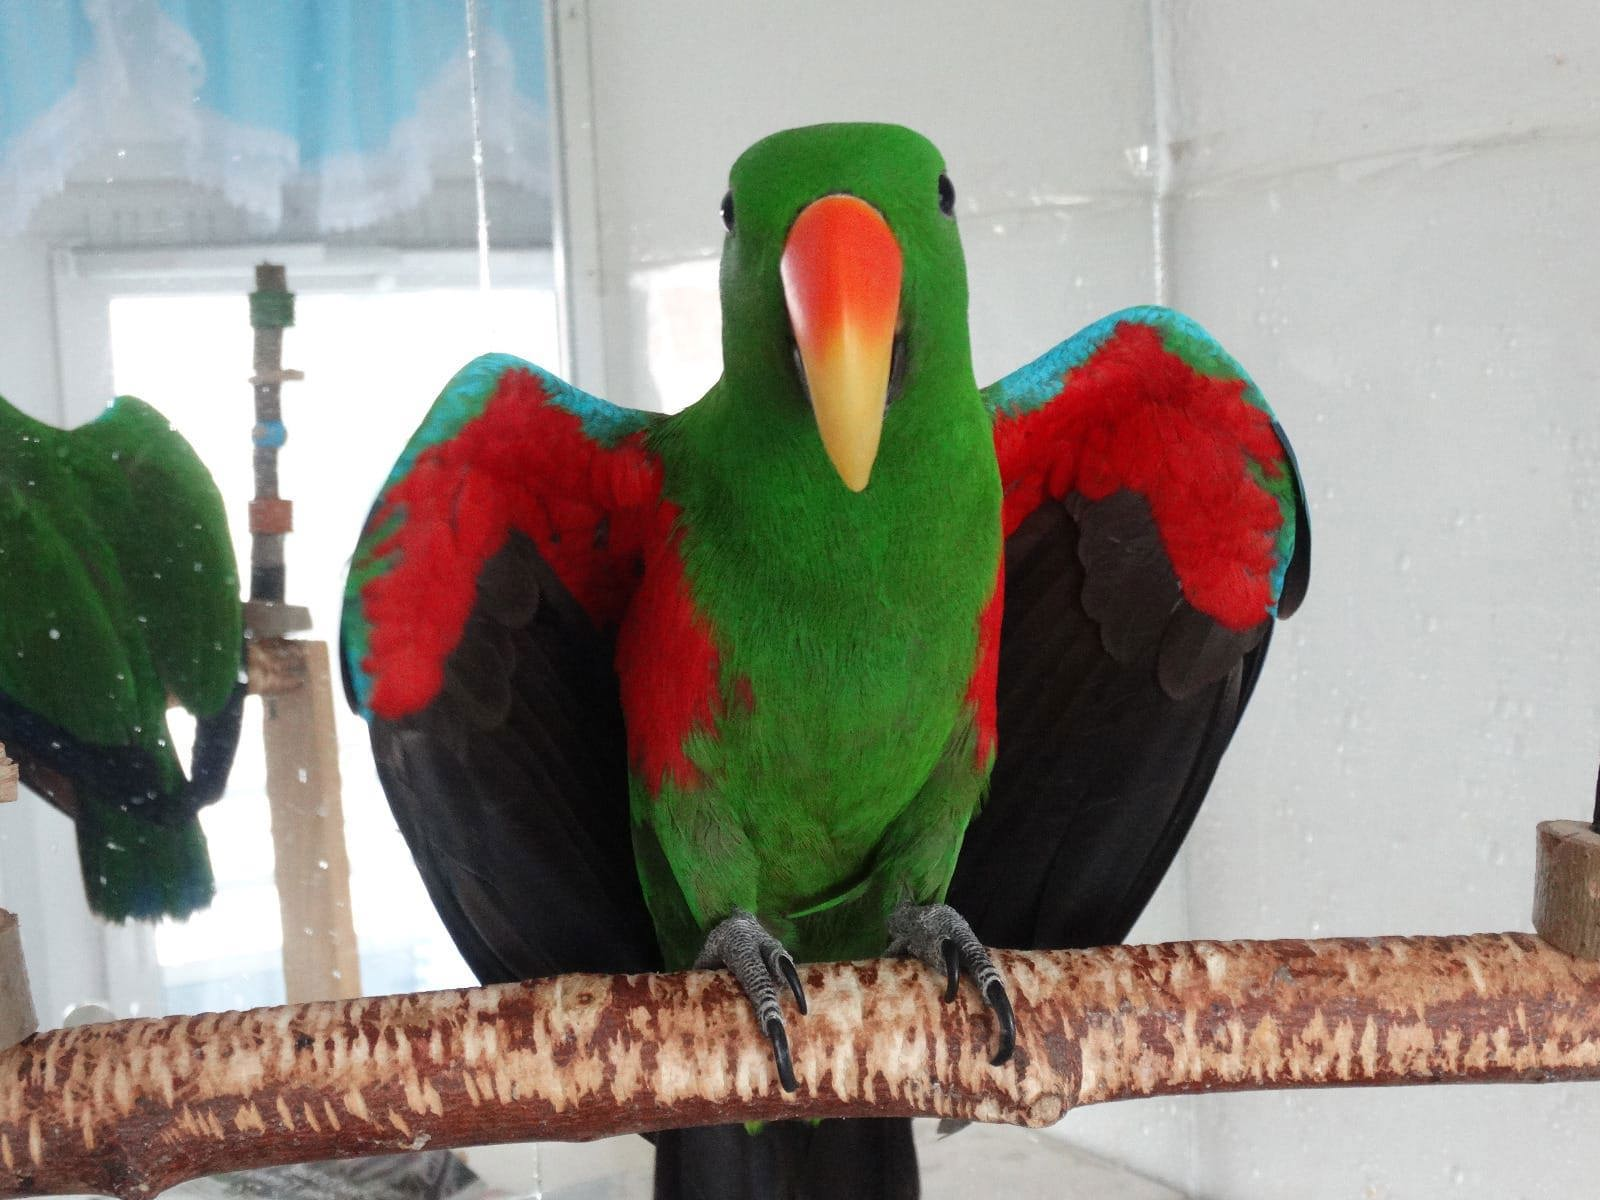 ожереловый, ожереловые попугаи ручные птенцы выкормыши, ожерелки, Индийский попугай.